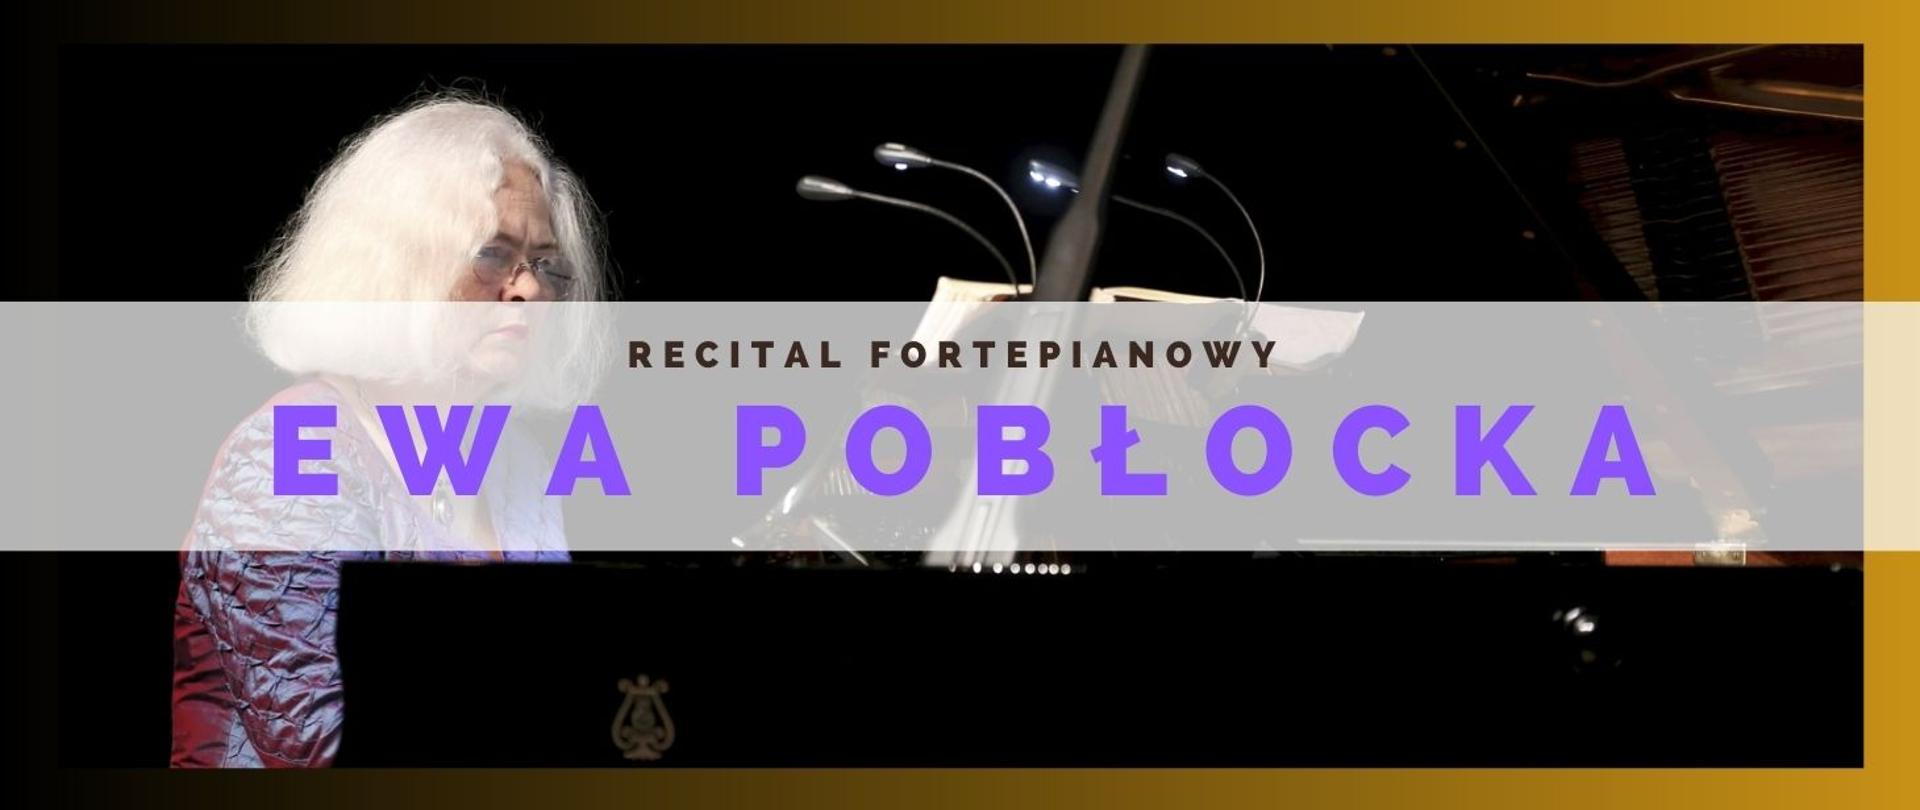 panorama, na tle zdjęcia pianistki przy fortepianie, dużymi fioletowymi literami imię i nazwisko artystki :Ewa Pobłocka. 